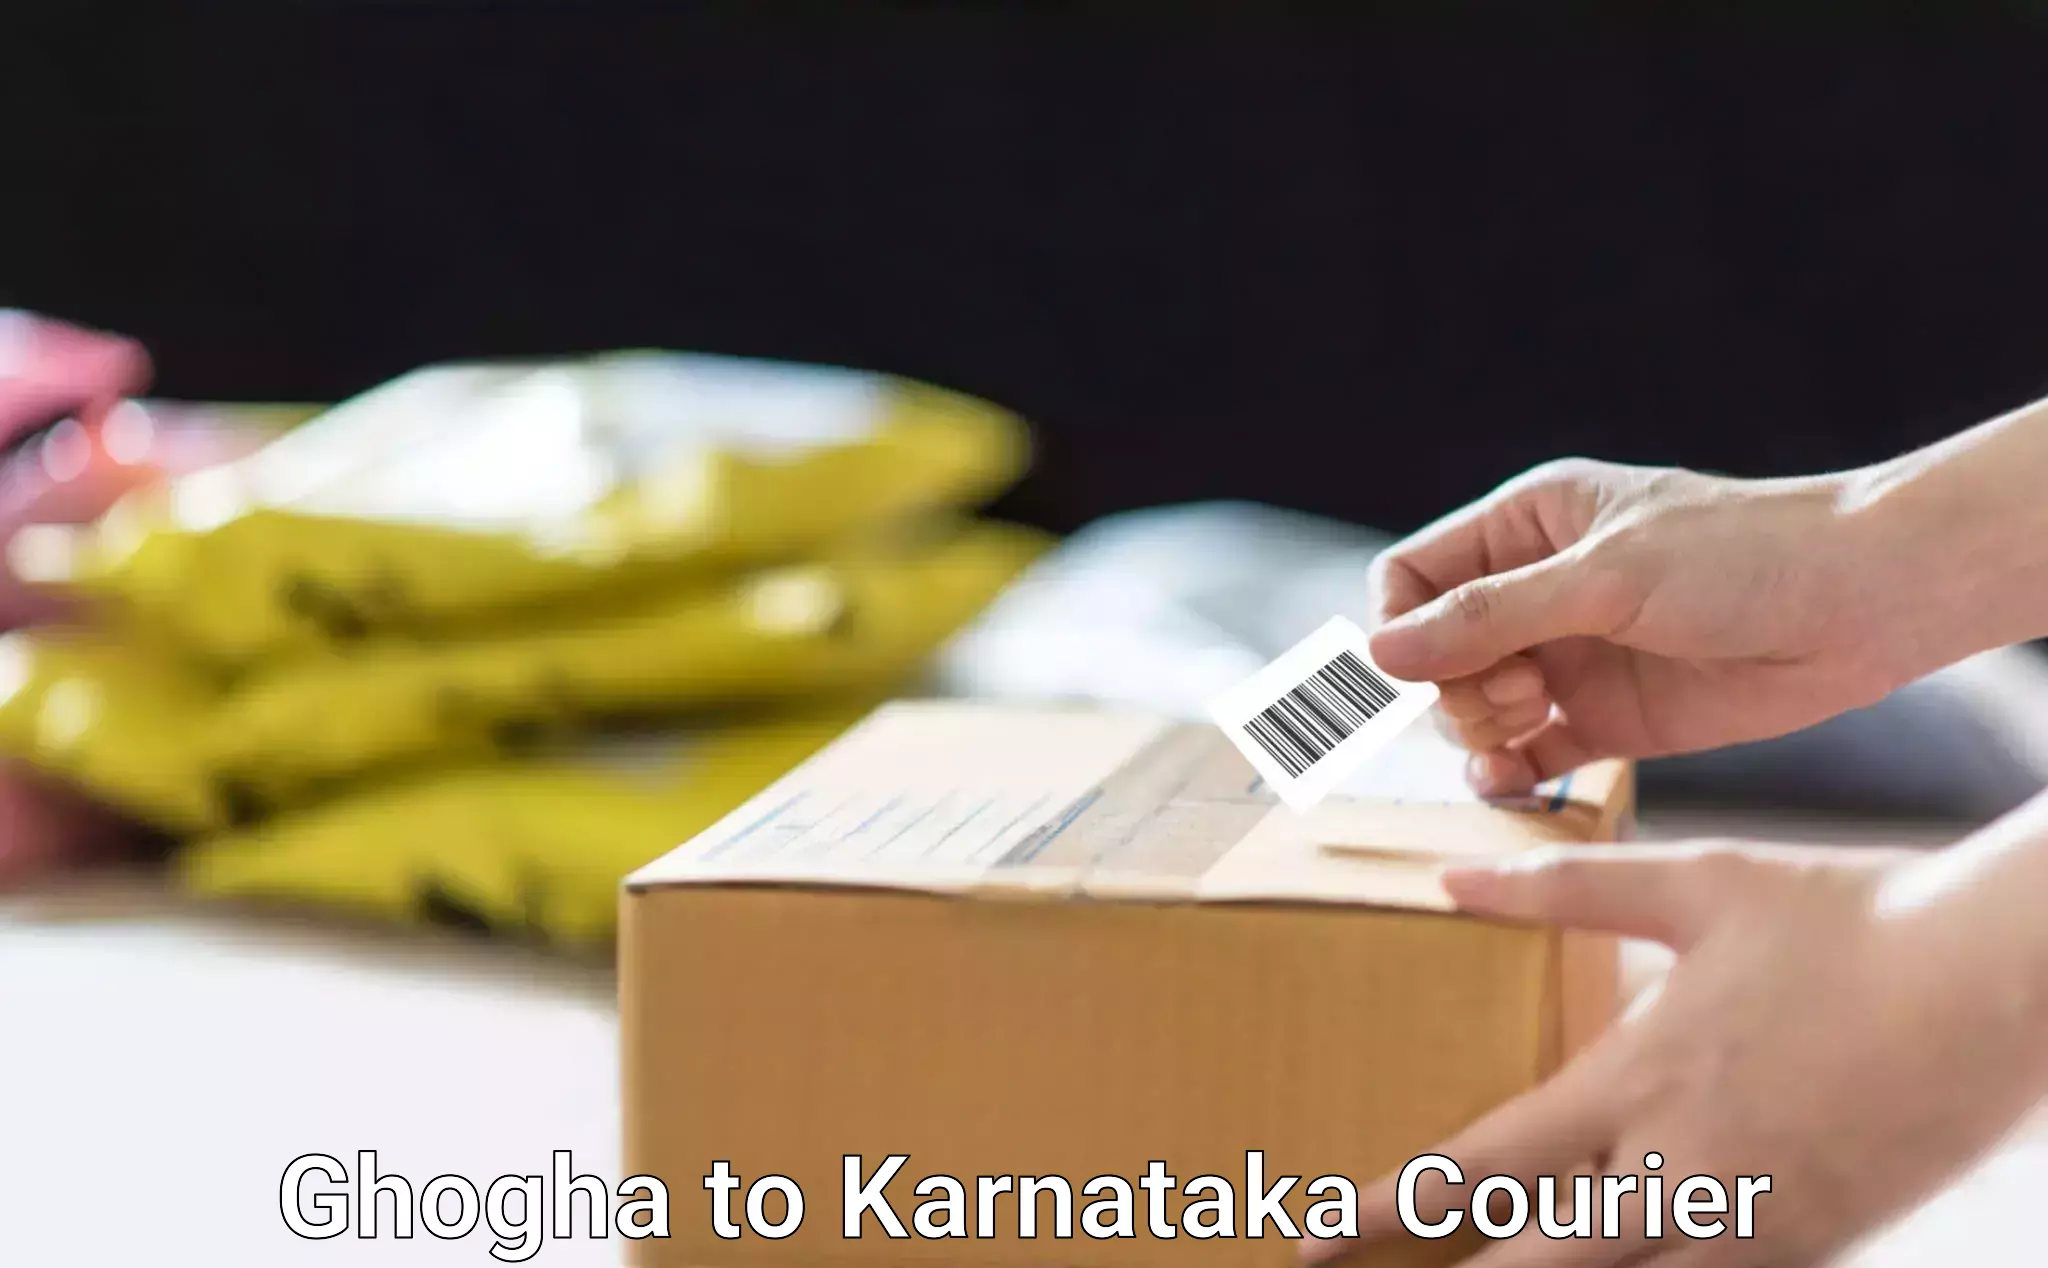 Professional furniture movers in Ghogha to Karnataka